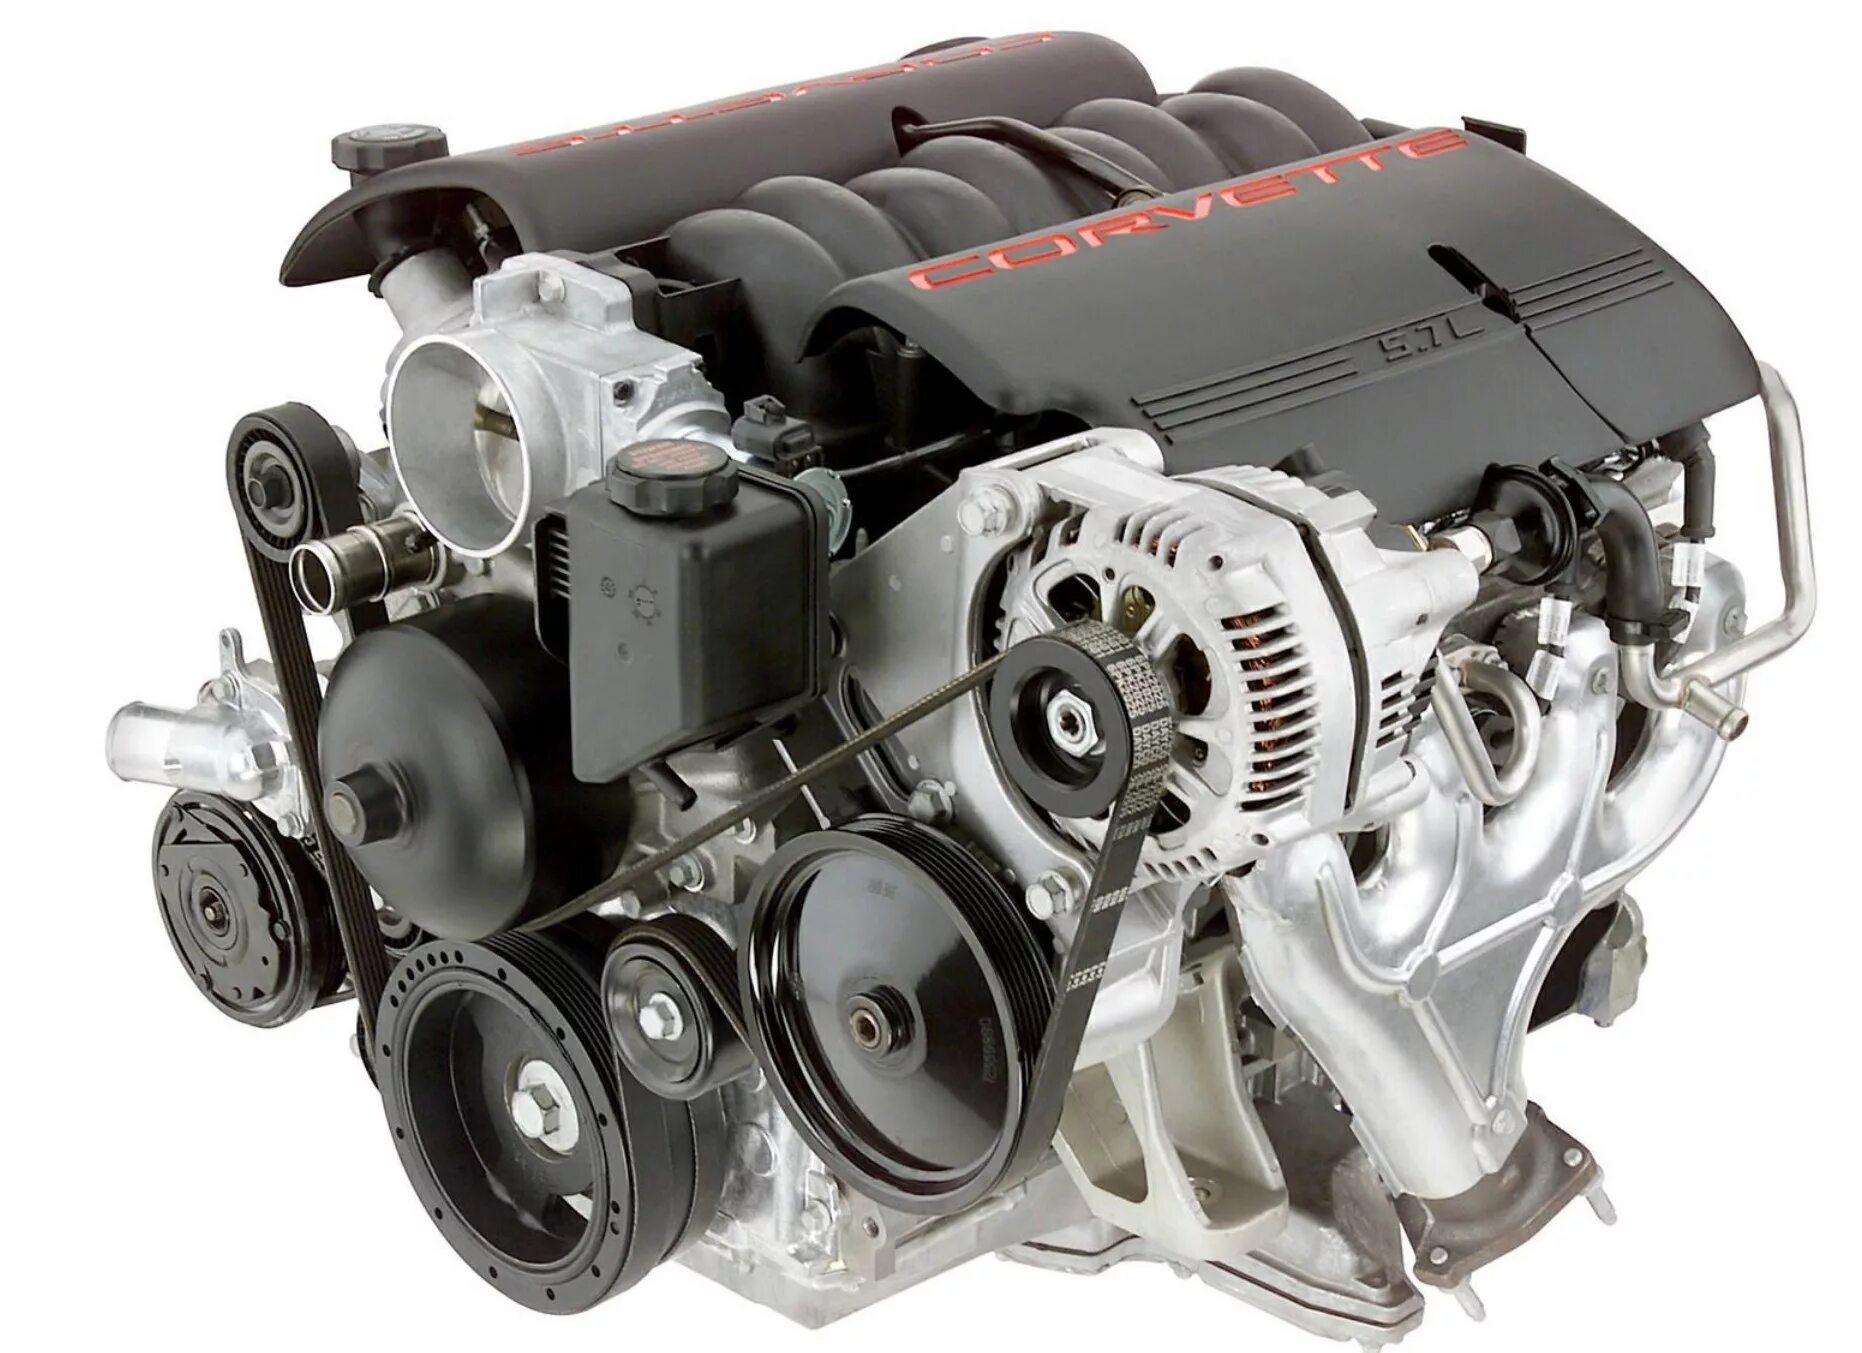 Ls 6 2. Ls1 Corvette engine. Двигатель Шевроле Корвет 5.7. Chevrolet Corvette c5 двигатель. V8 Chevrolet двигатель турбо.